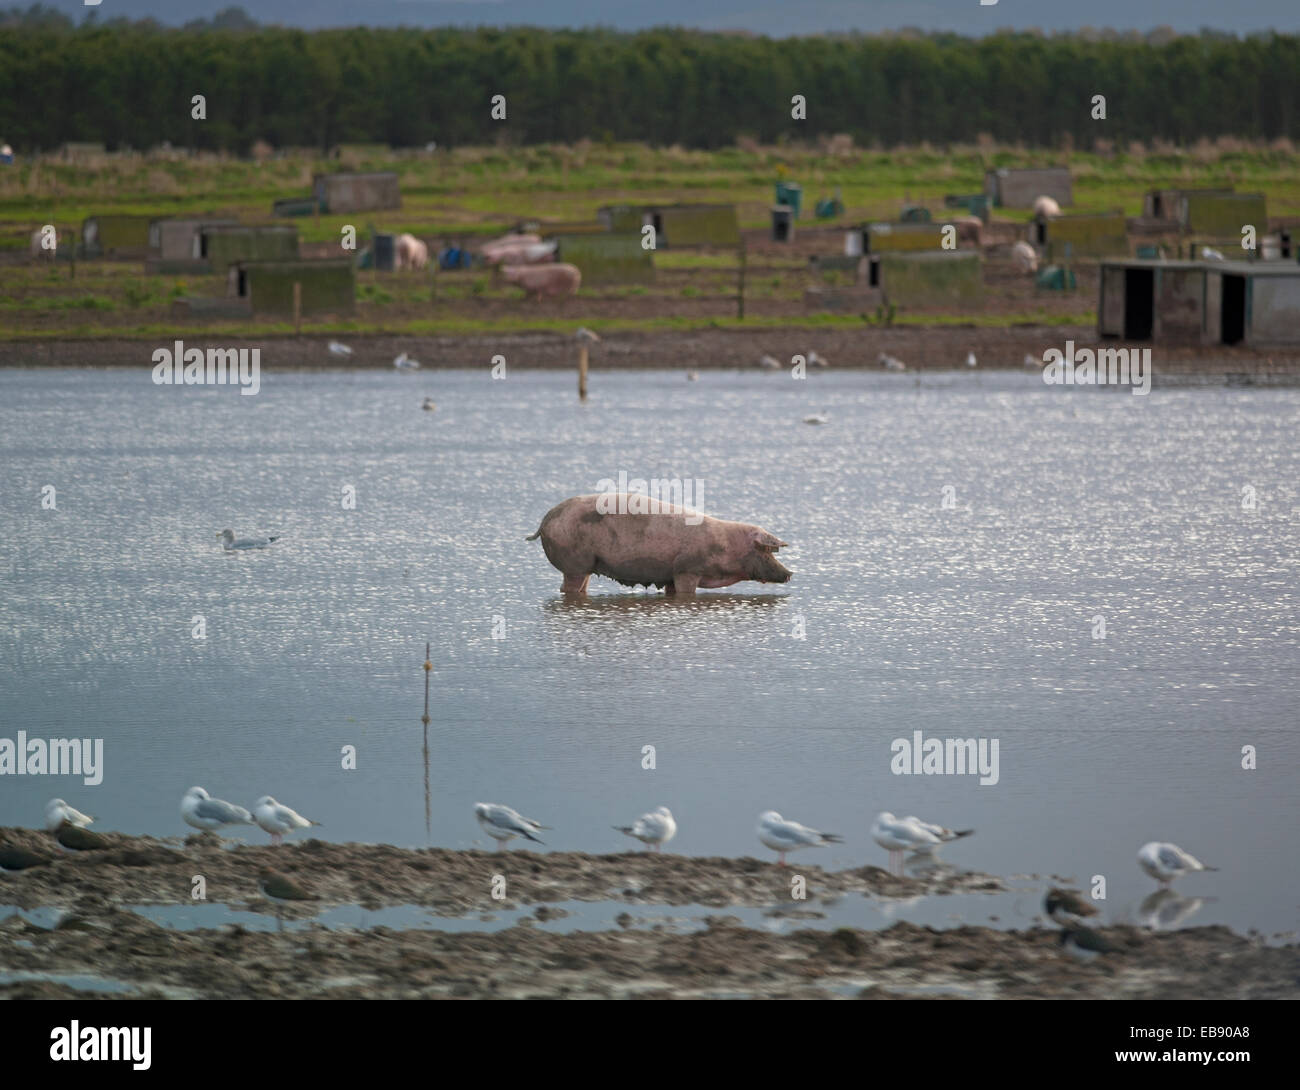 Un surtido de cerdo de la industria de la cría de animales para ir a remar en un campo inundado, en Lossiemouth, Moray. Escocia. Ocs 9238. Foto de stock